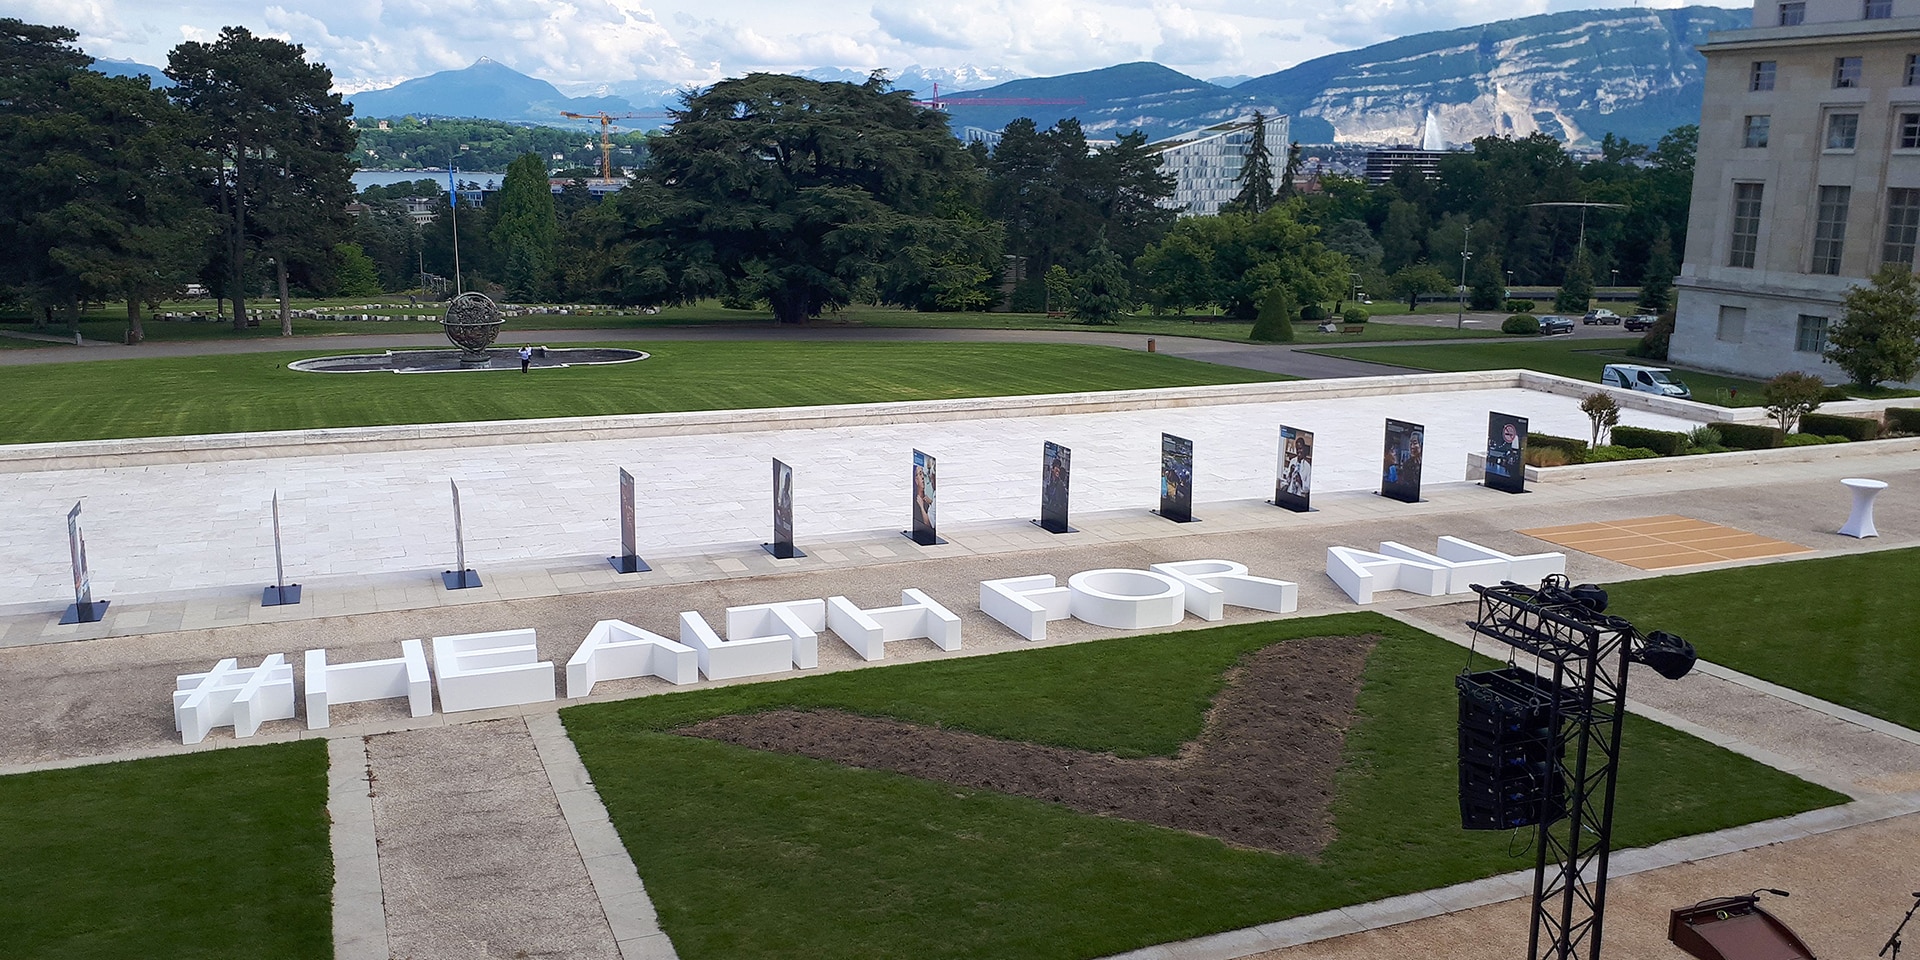 Sul prato di fronte all’edificio delle Nazioni Unite a Ginevra appare in grande la scritta #HEALTH FOR ALL.